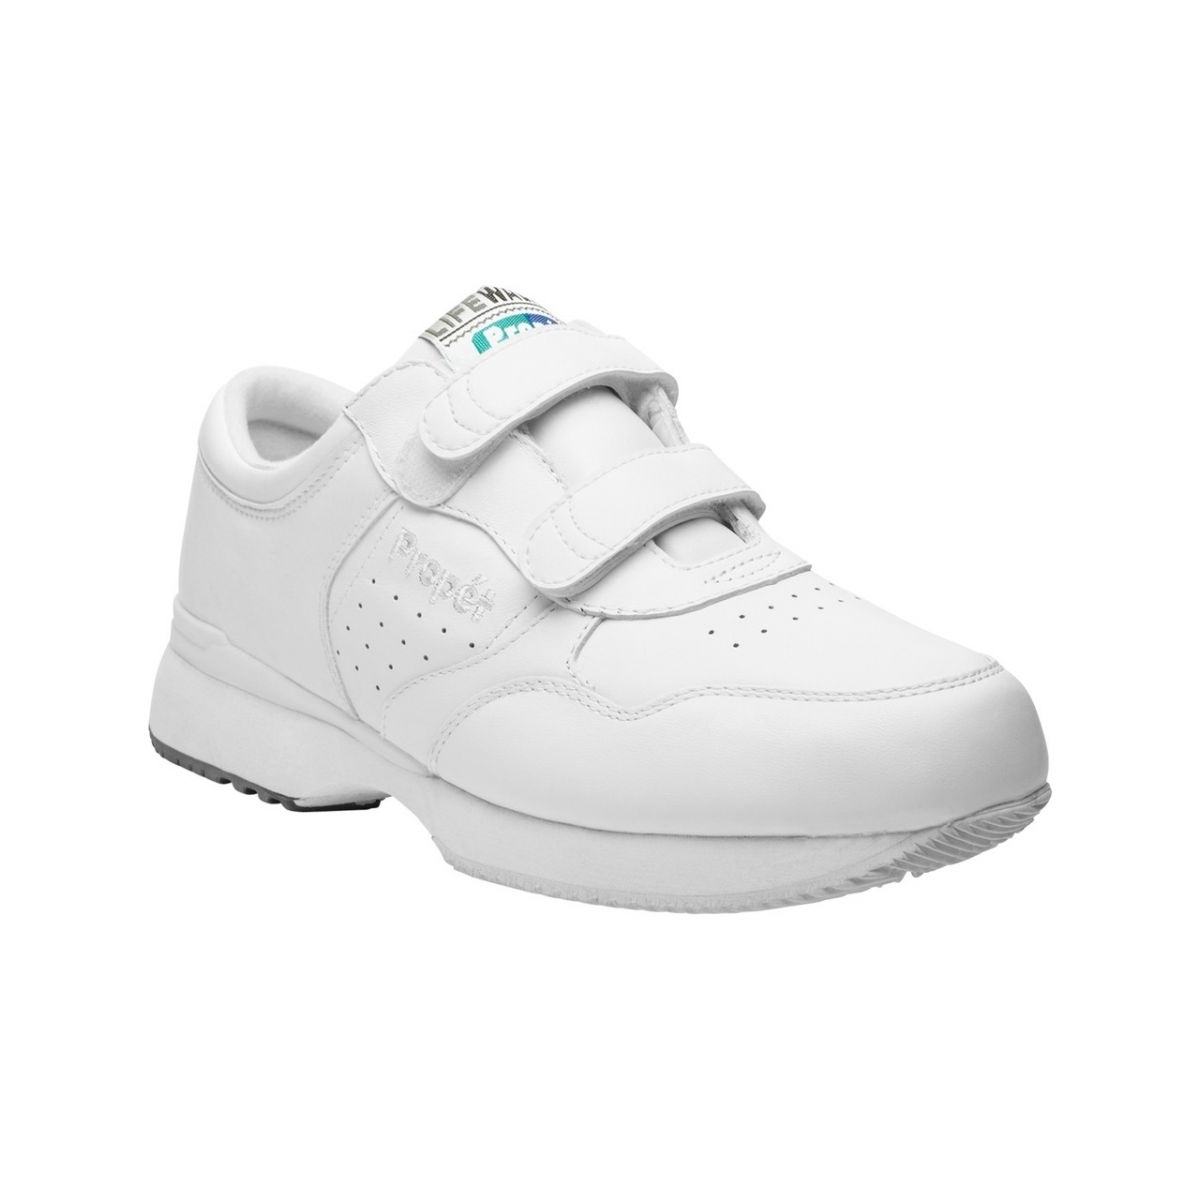 Propet Men's Life Walker Strap Shoe White - M3705WHT WHITE - WHITE, 18 X-Wide